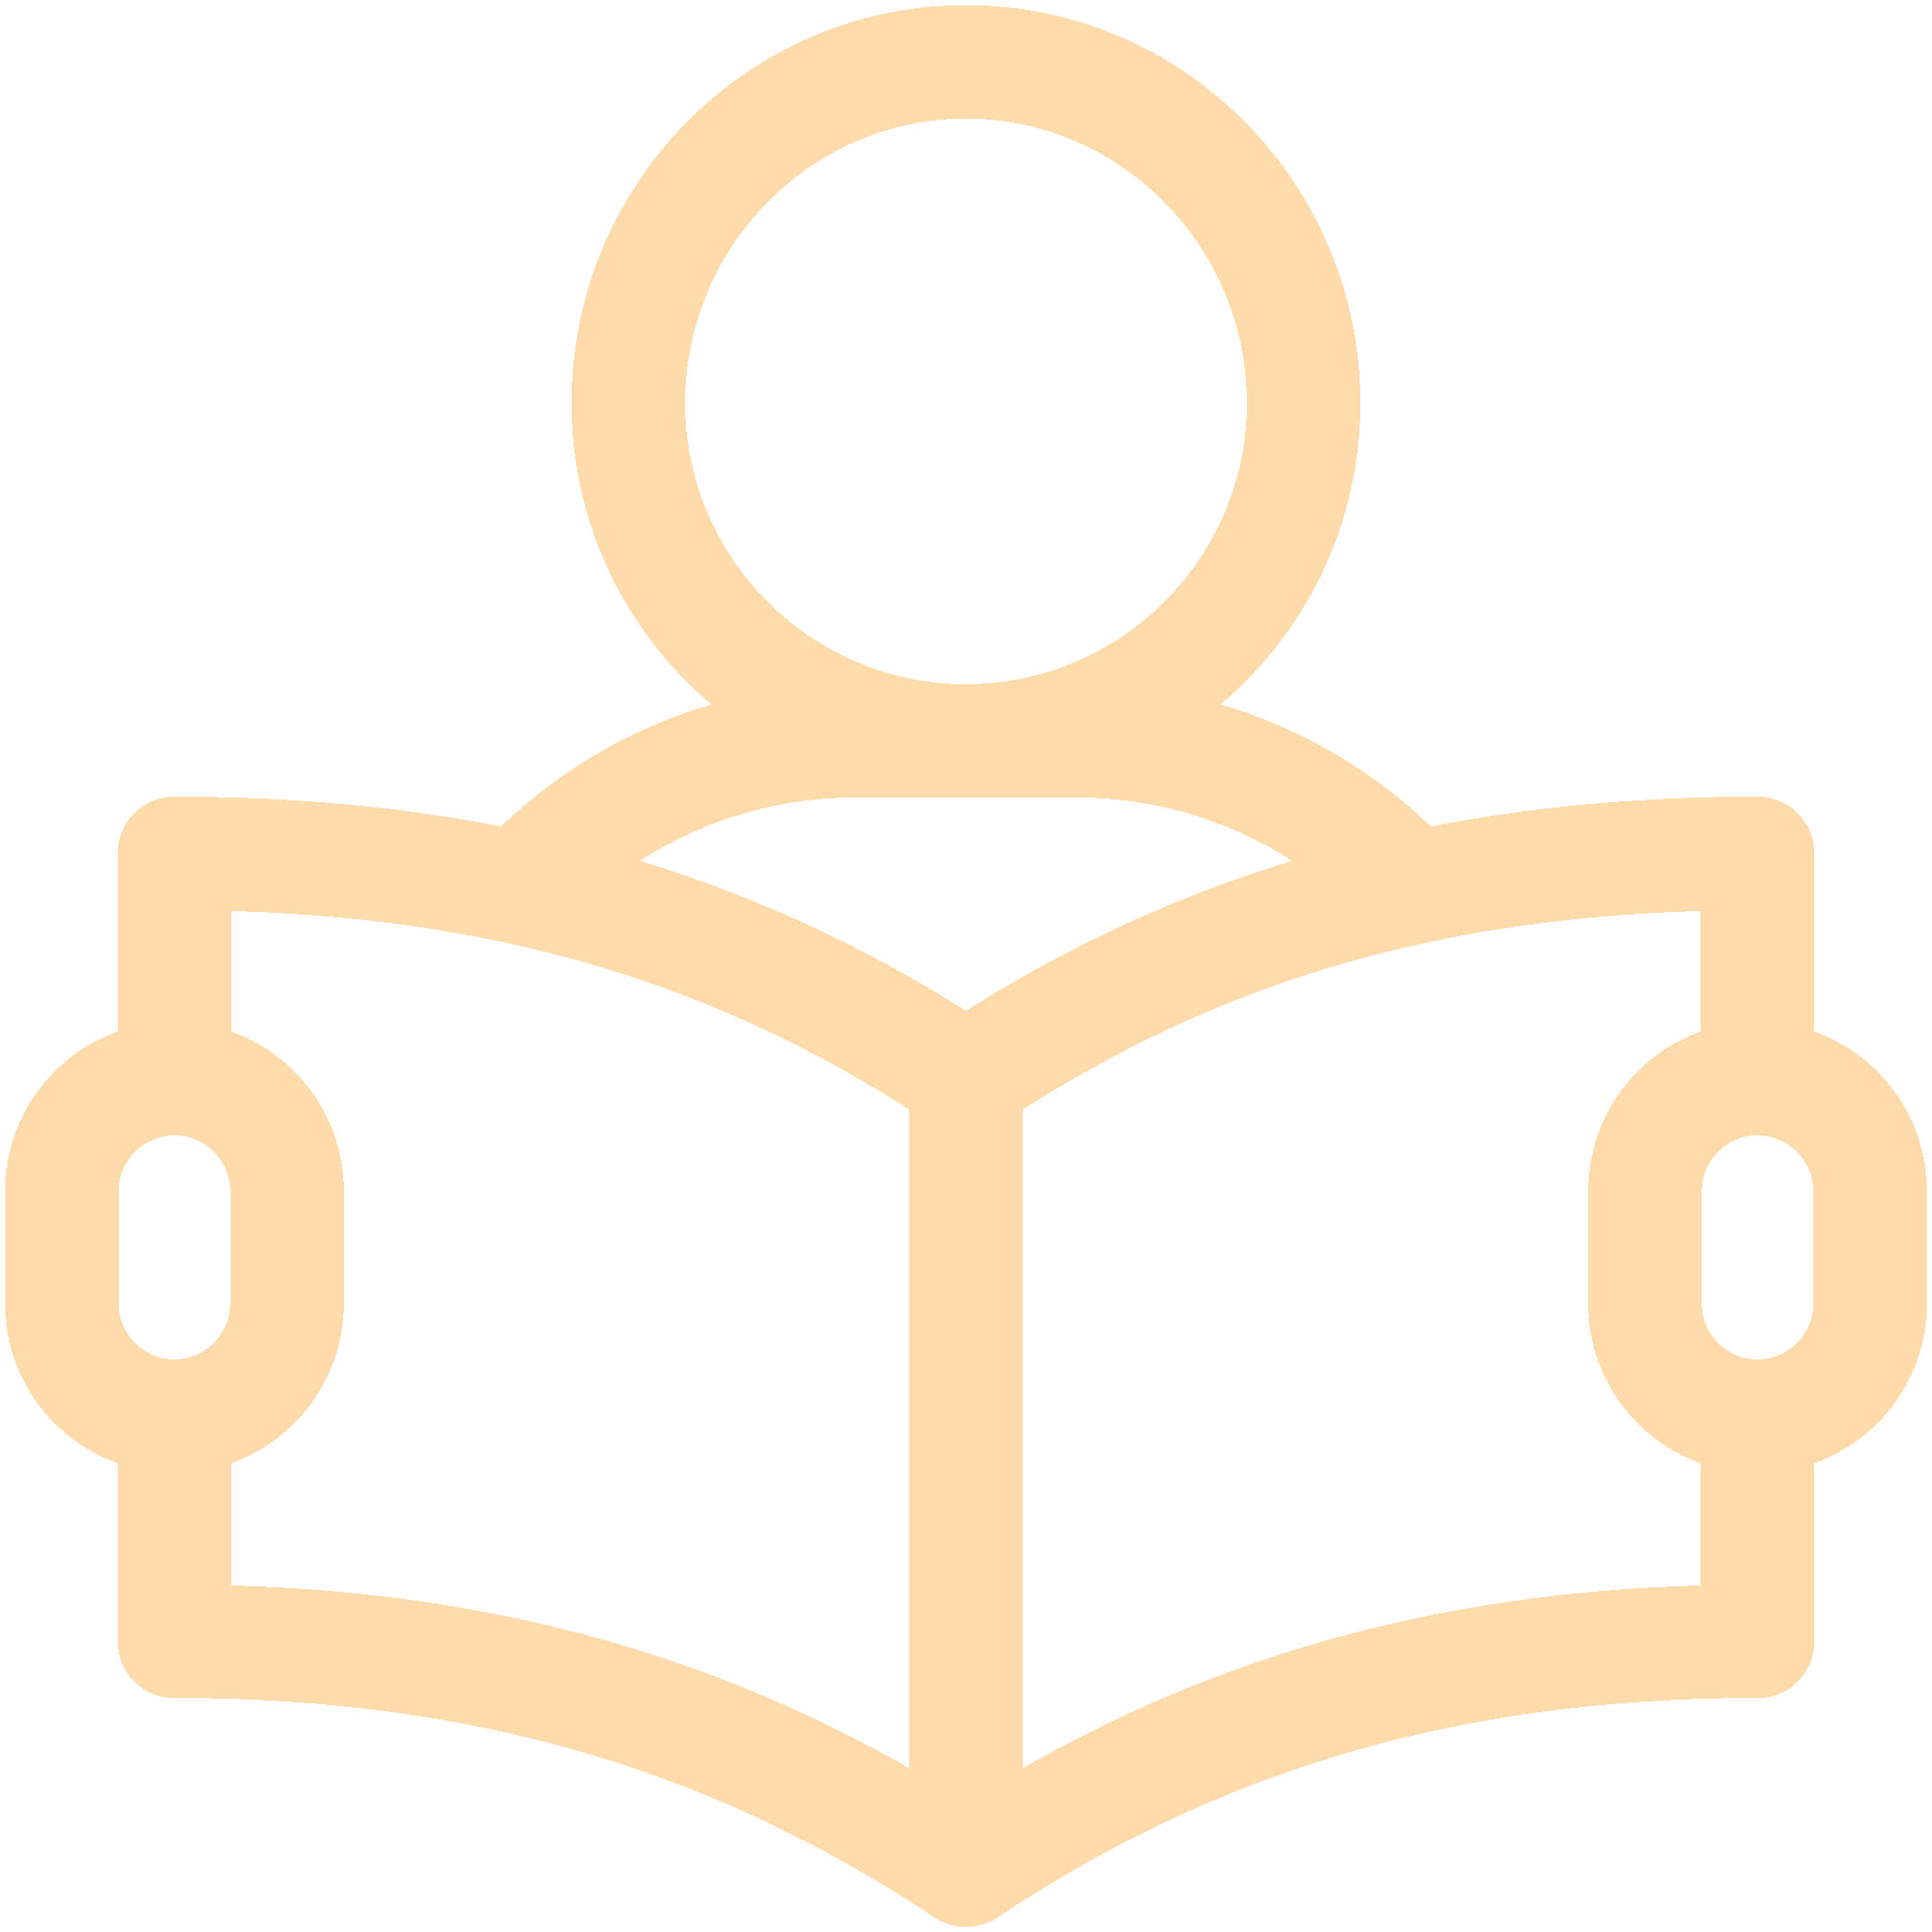 Mentors Logo